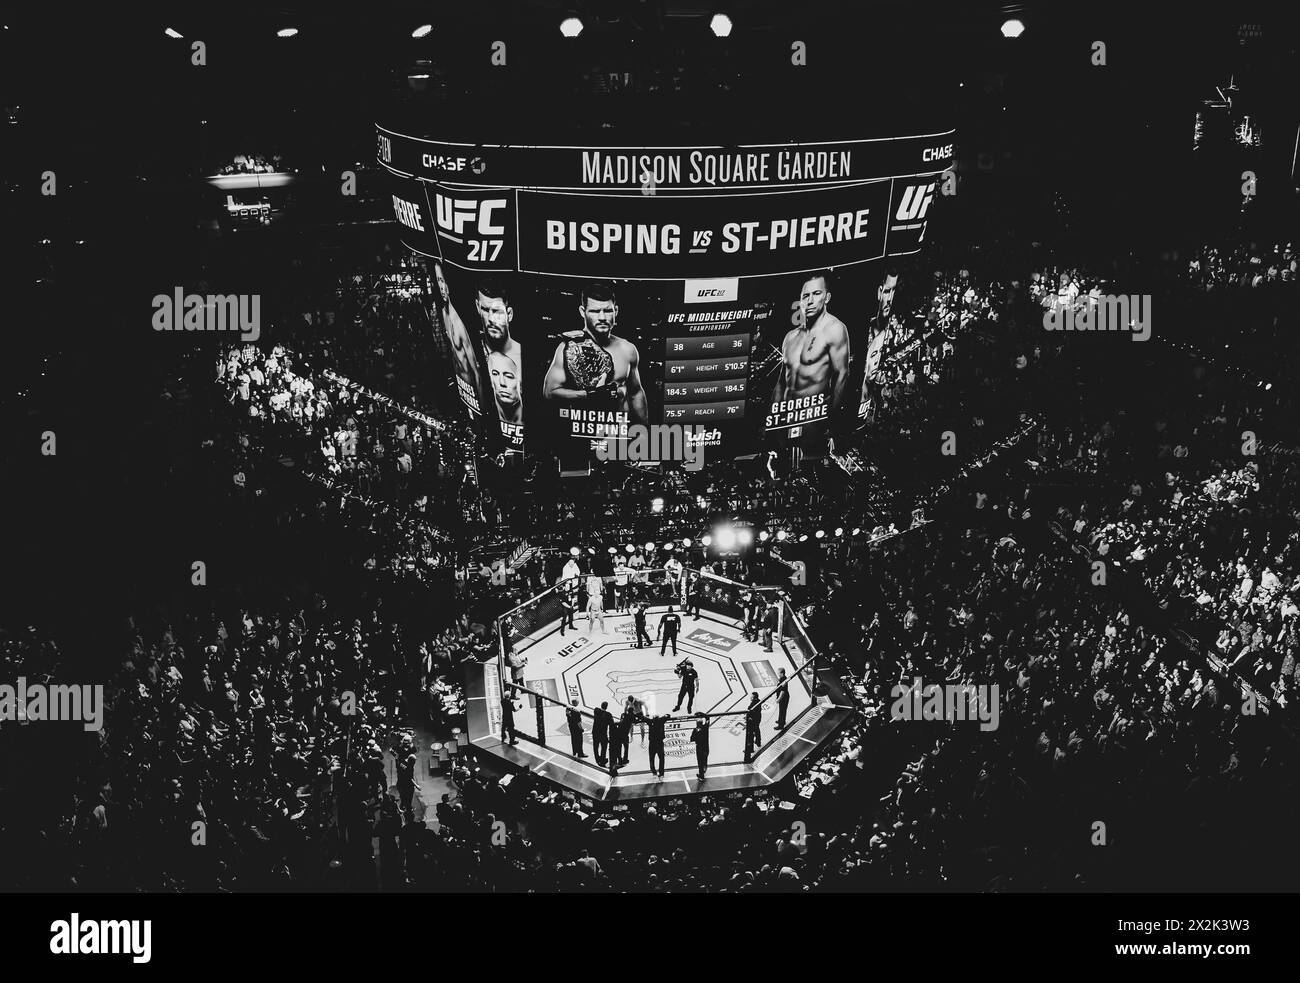 Diese Momentaufnahme einer UFC Fight Night im Madison Square Garden sorgt für eine aufregende Atmosphäre, die von einer Menge eifriger Zuschauer erfüllt ist. Stockfoto